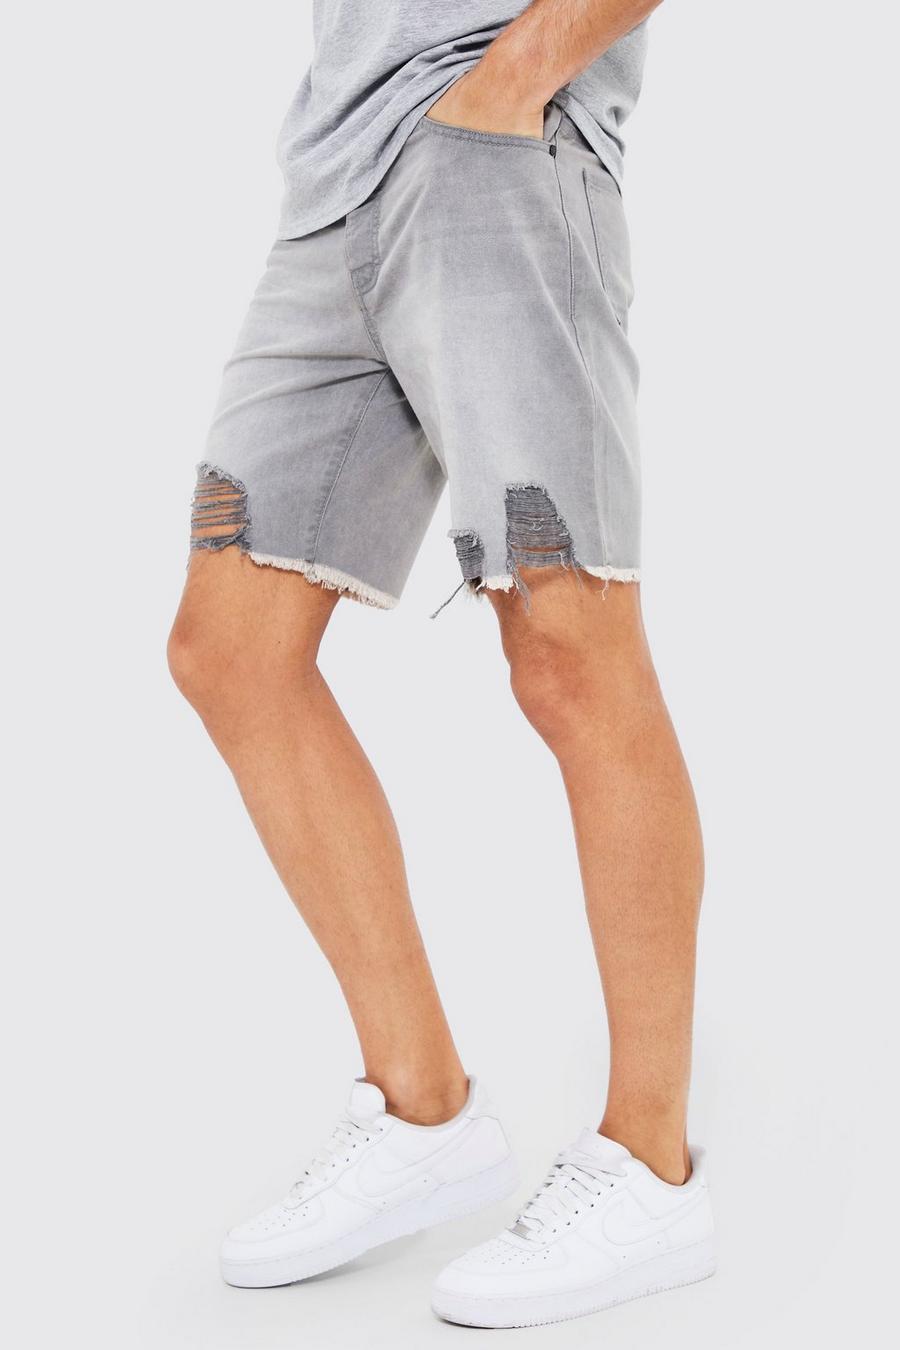 אפור בהיר grigio שורט מבד ג'ינס בגזרה צרה עם גימור פרום לגברים גבוהים